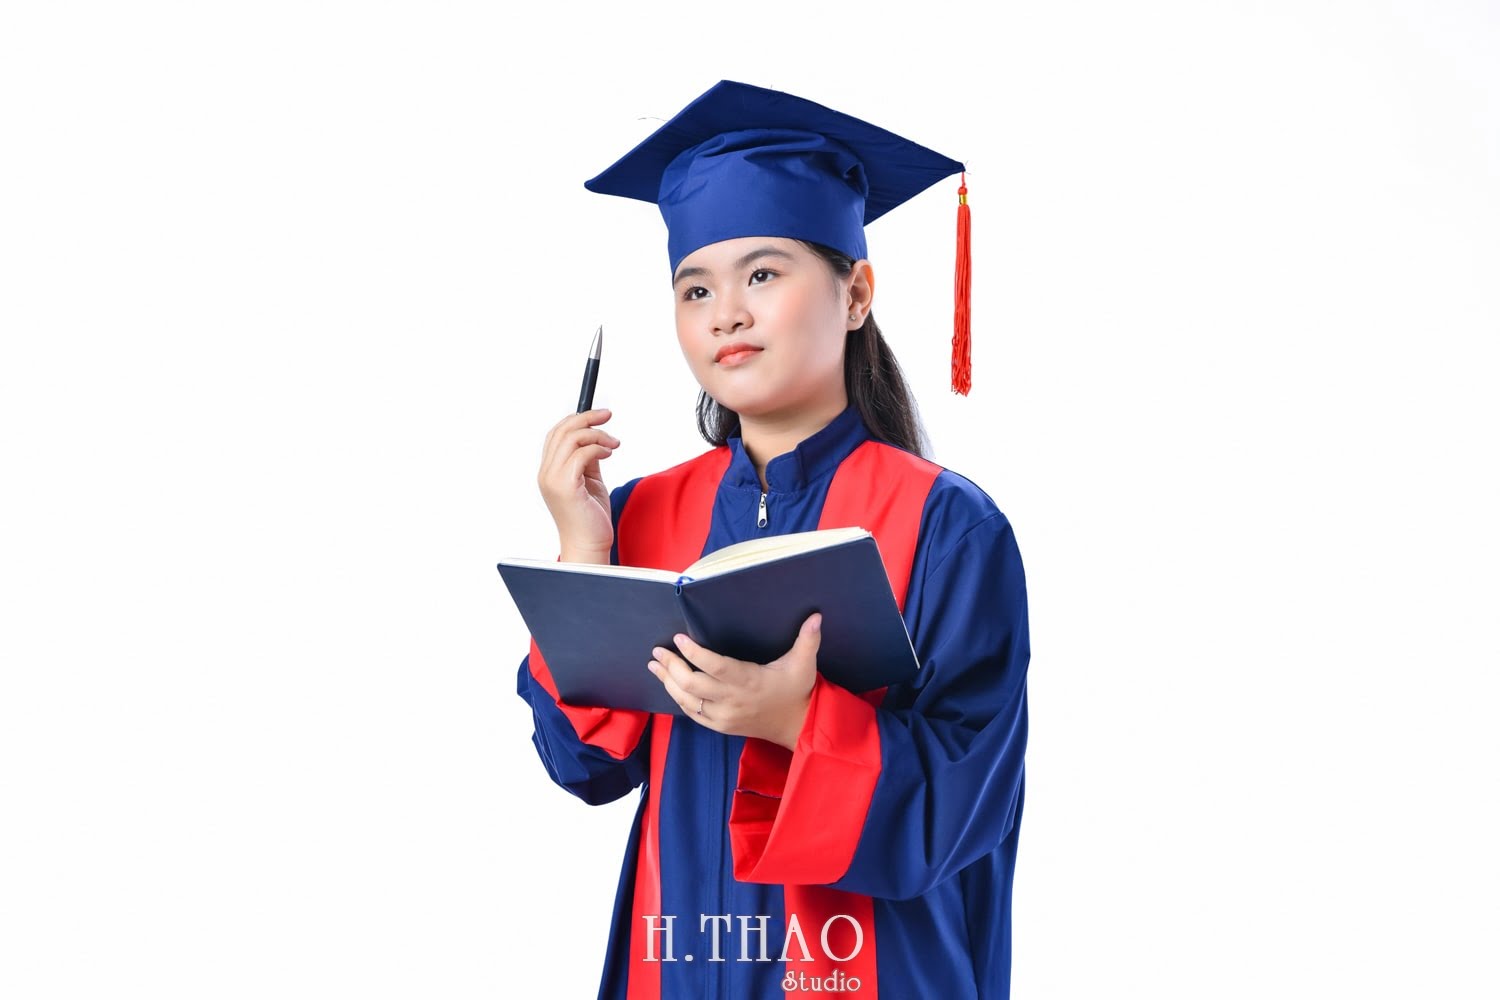 Anh tot nghiep 3 min 1 - Dịch vụ chụp ảnh tốt nghiệp cho sinh viên tại Tp.HCM – HThao Studio